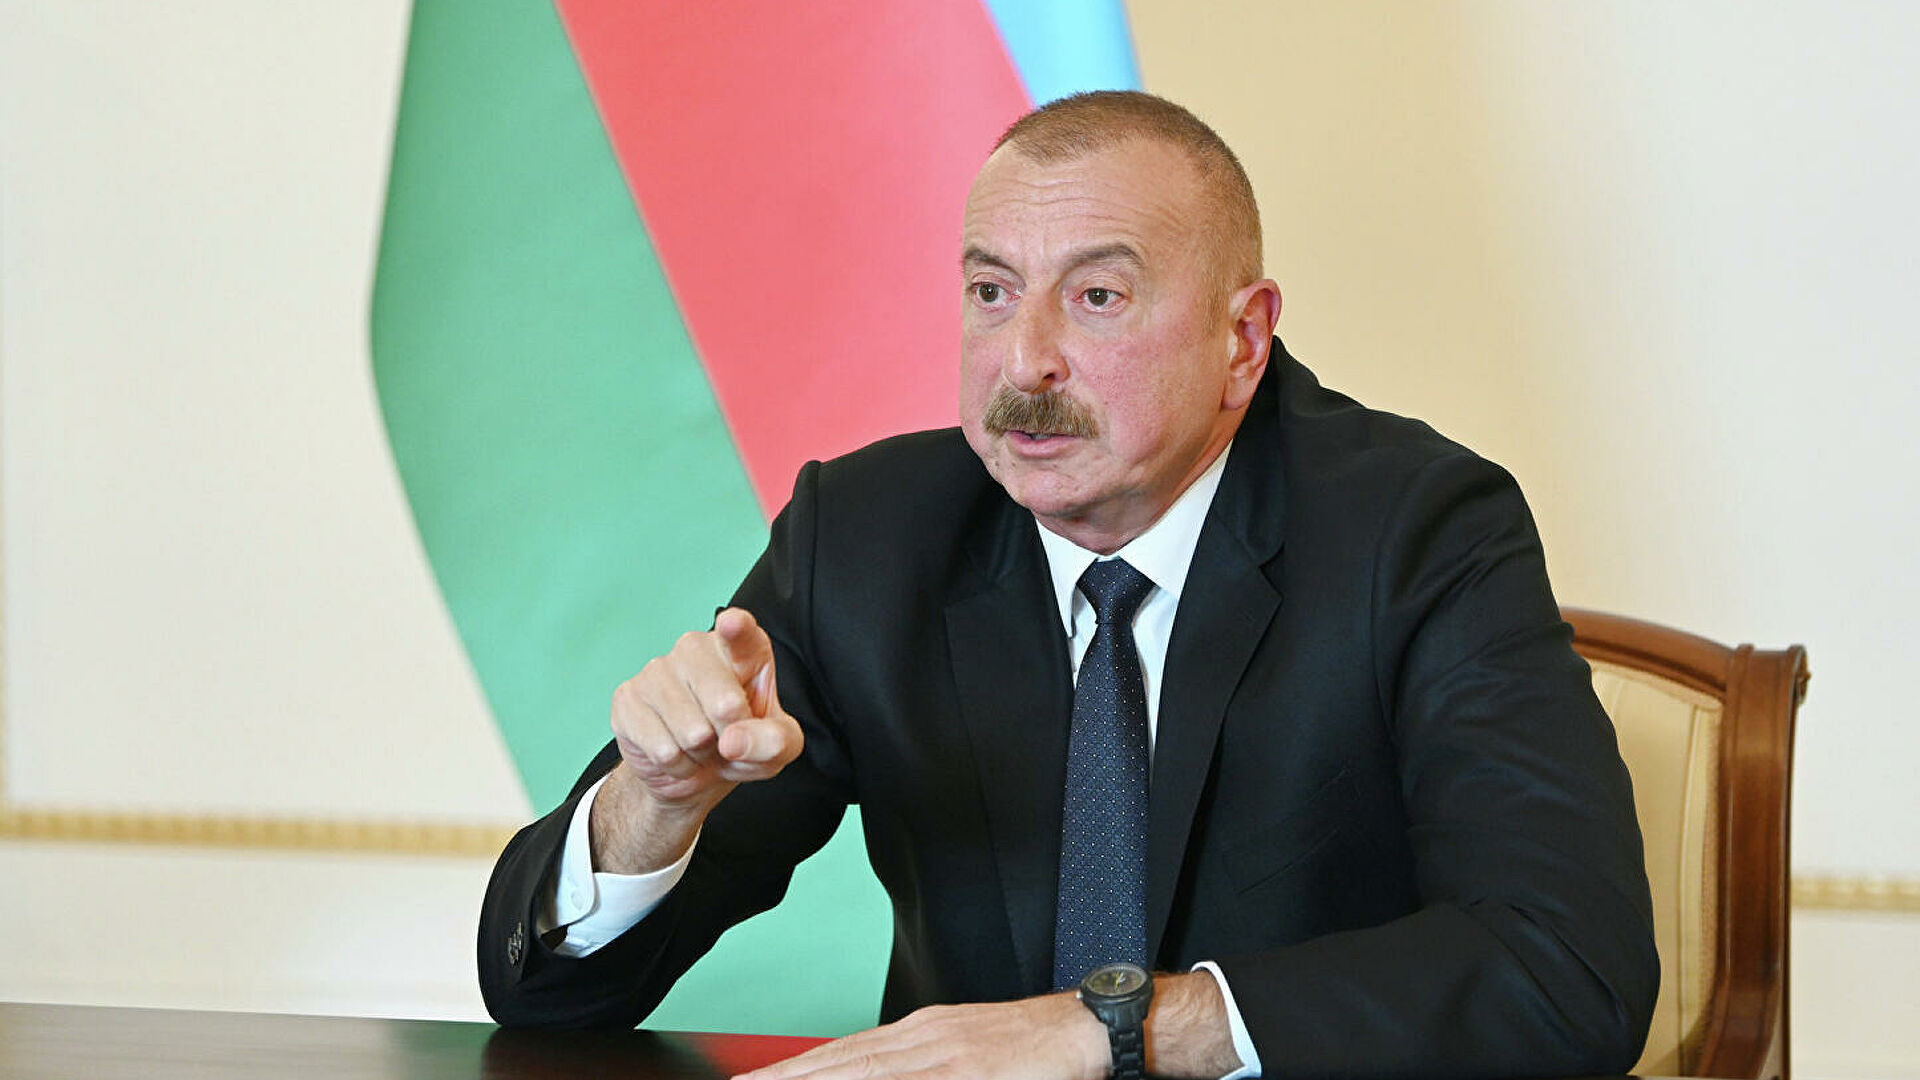 Алиев назвал условием для переговоров с Арменией признание территориальной целостности